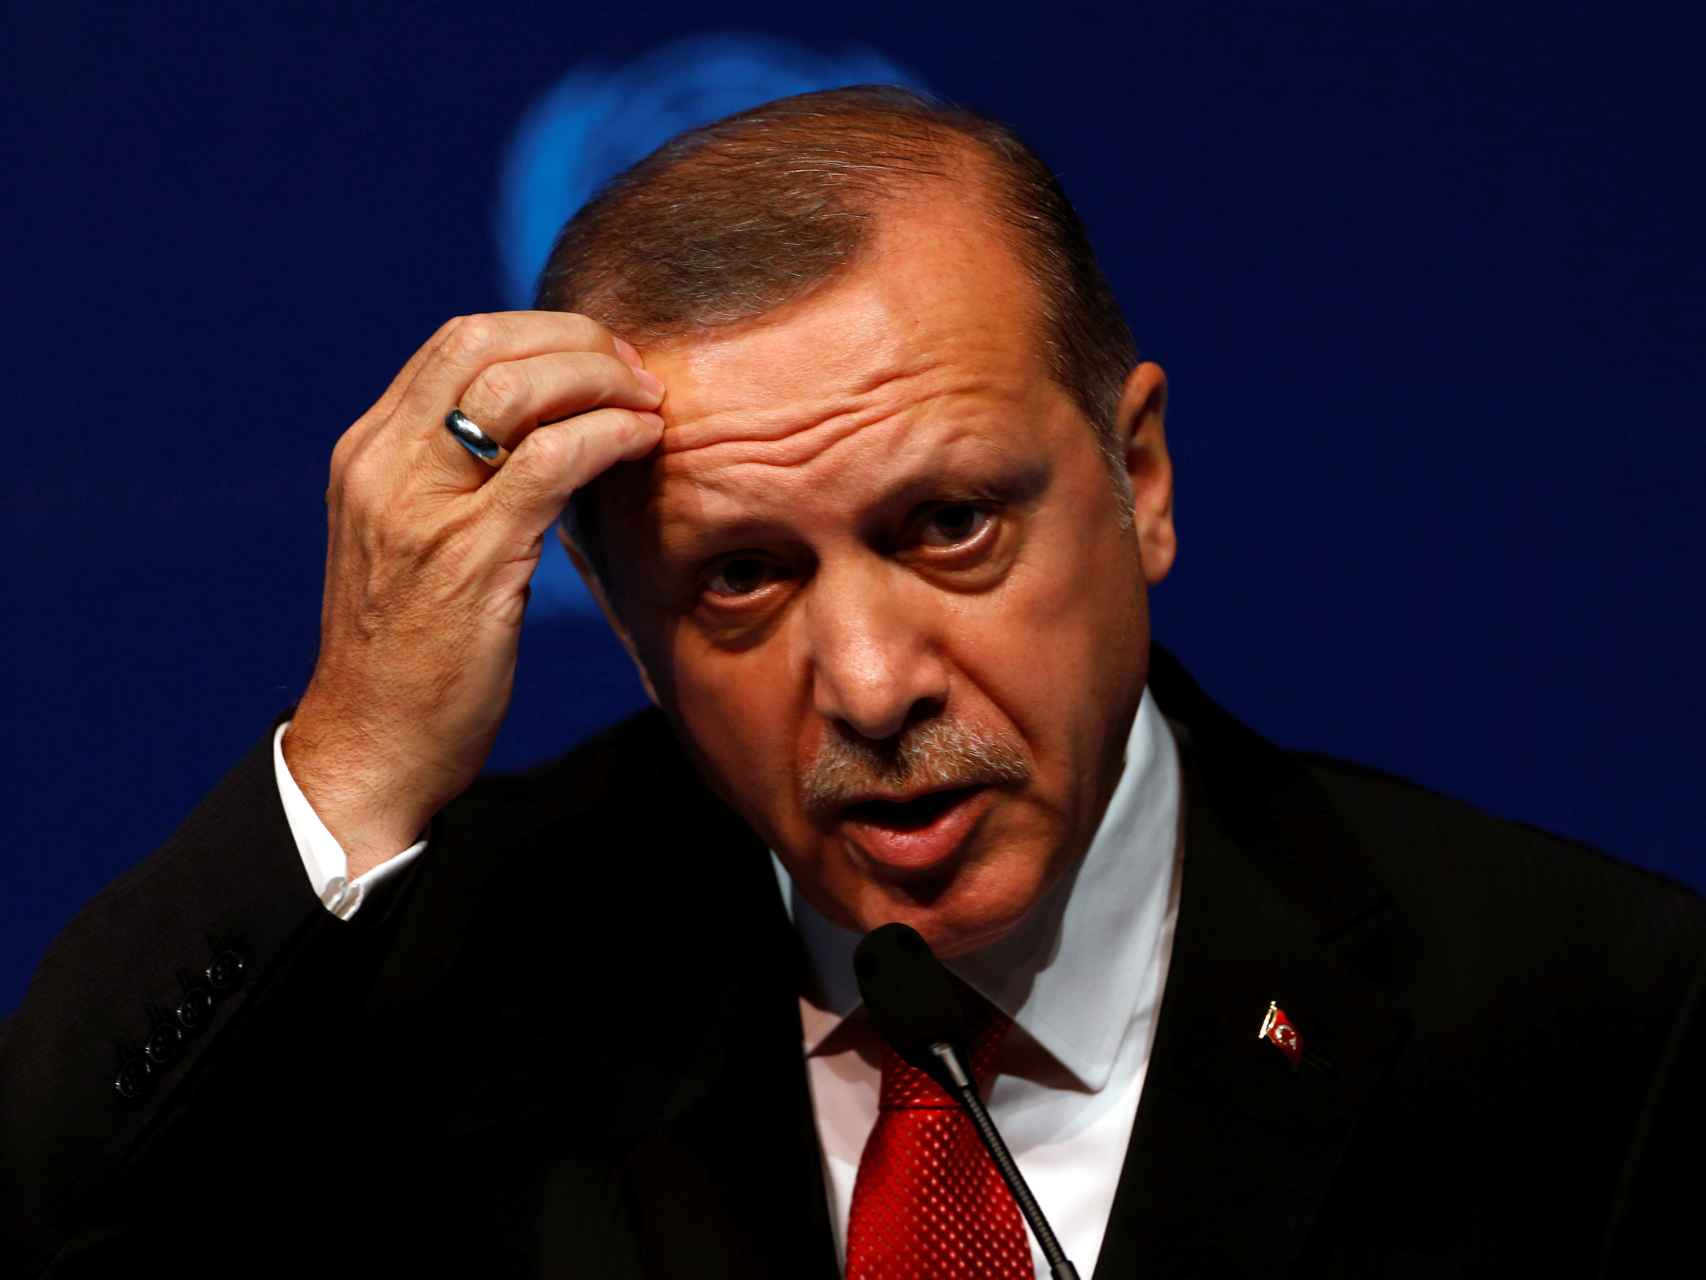 El presidente turco Erdogan rechaza cambiar su ley antiterrorista como pide la UE